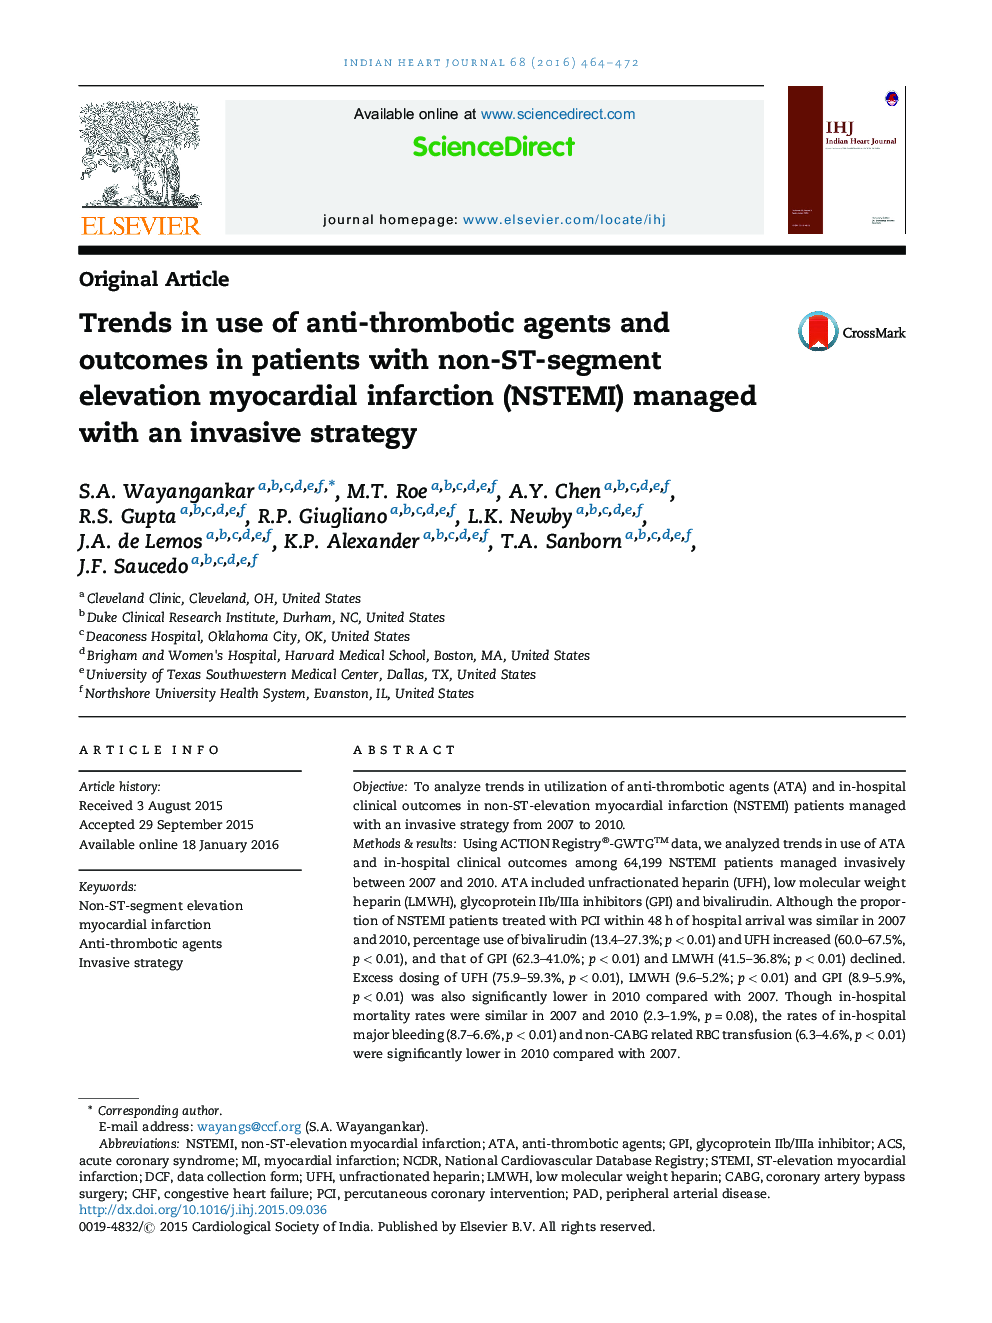 موضوعات داغ در استفاده از عوامل ضدلخته و بروز عوارض در بیماران مبتلا به انفارکتوس میوکارد (NSTEMI) ارتفاع غیرقطعه ST با یک استراتژی تهاجمی موفق